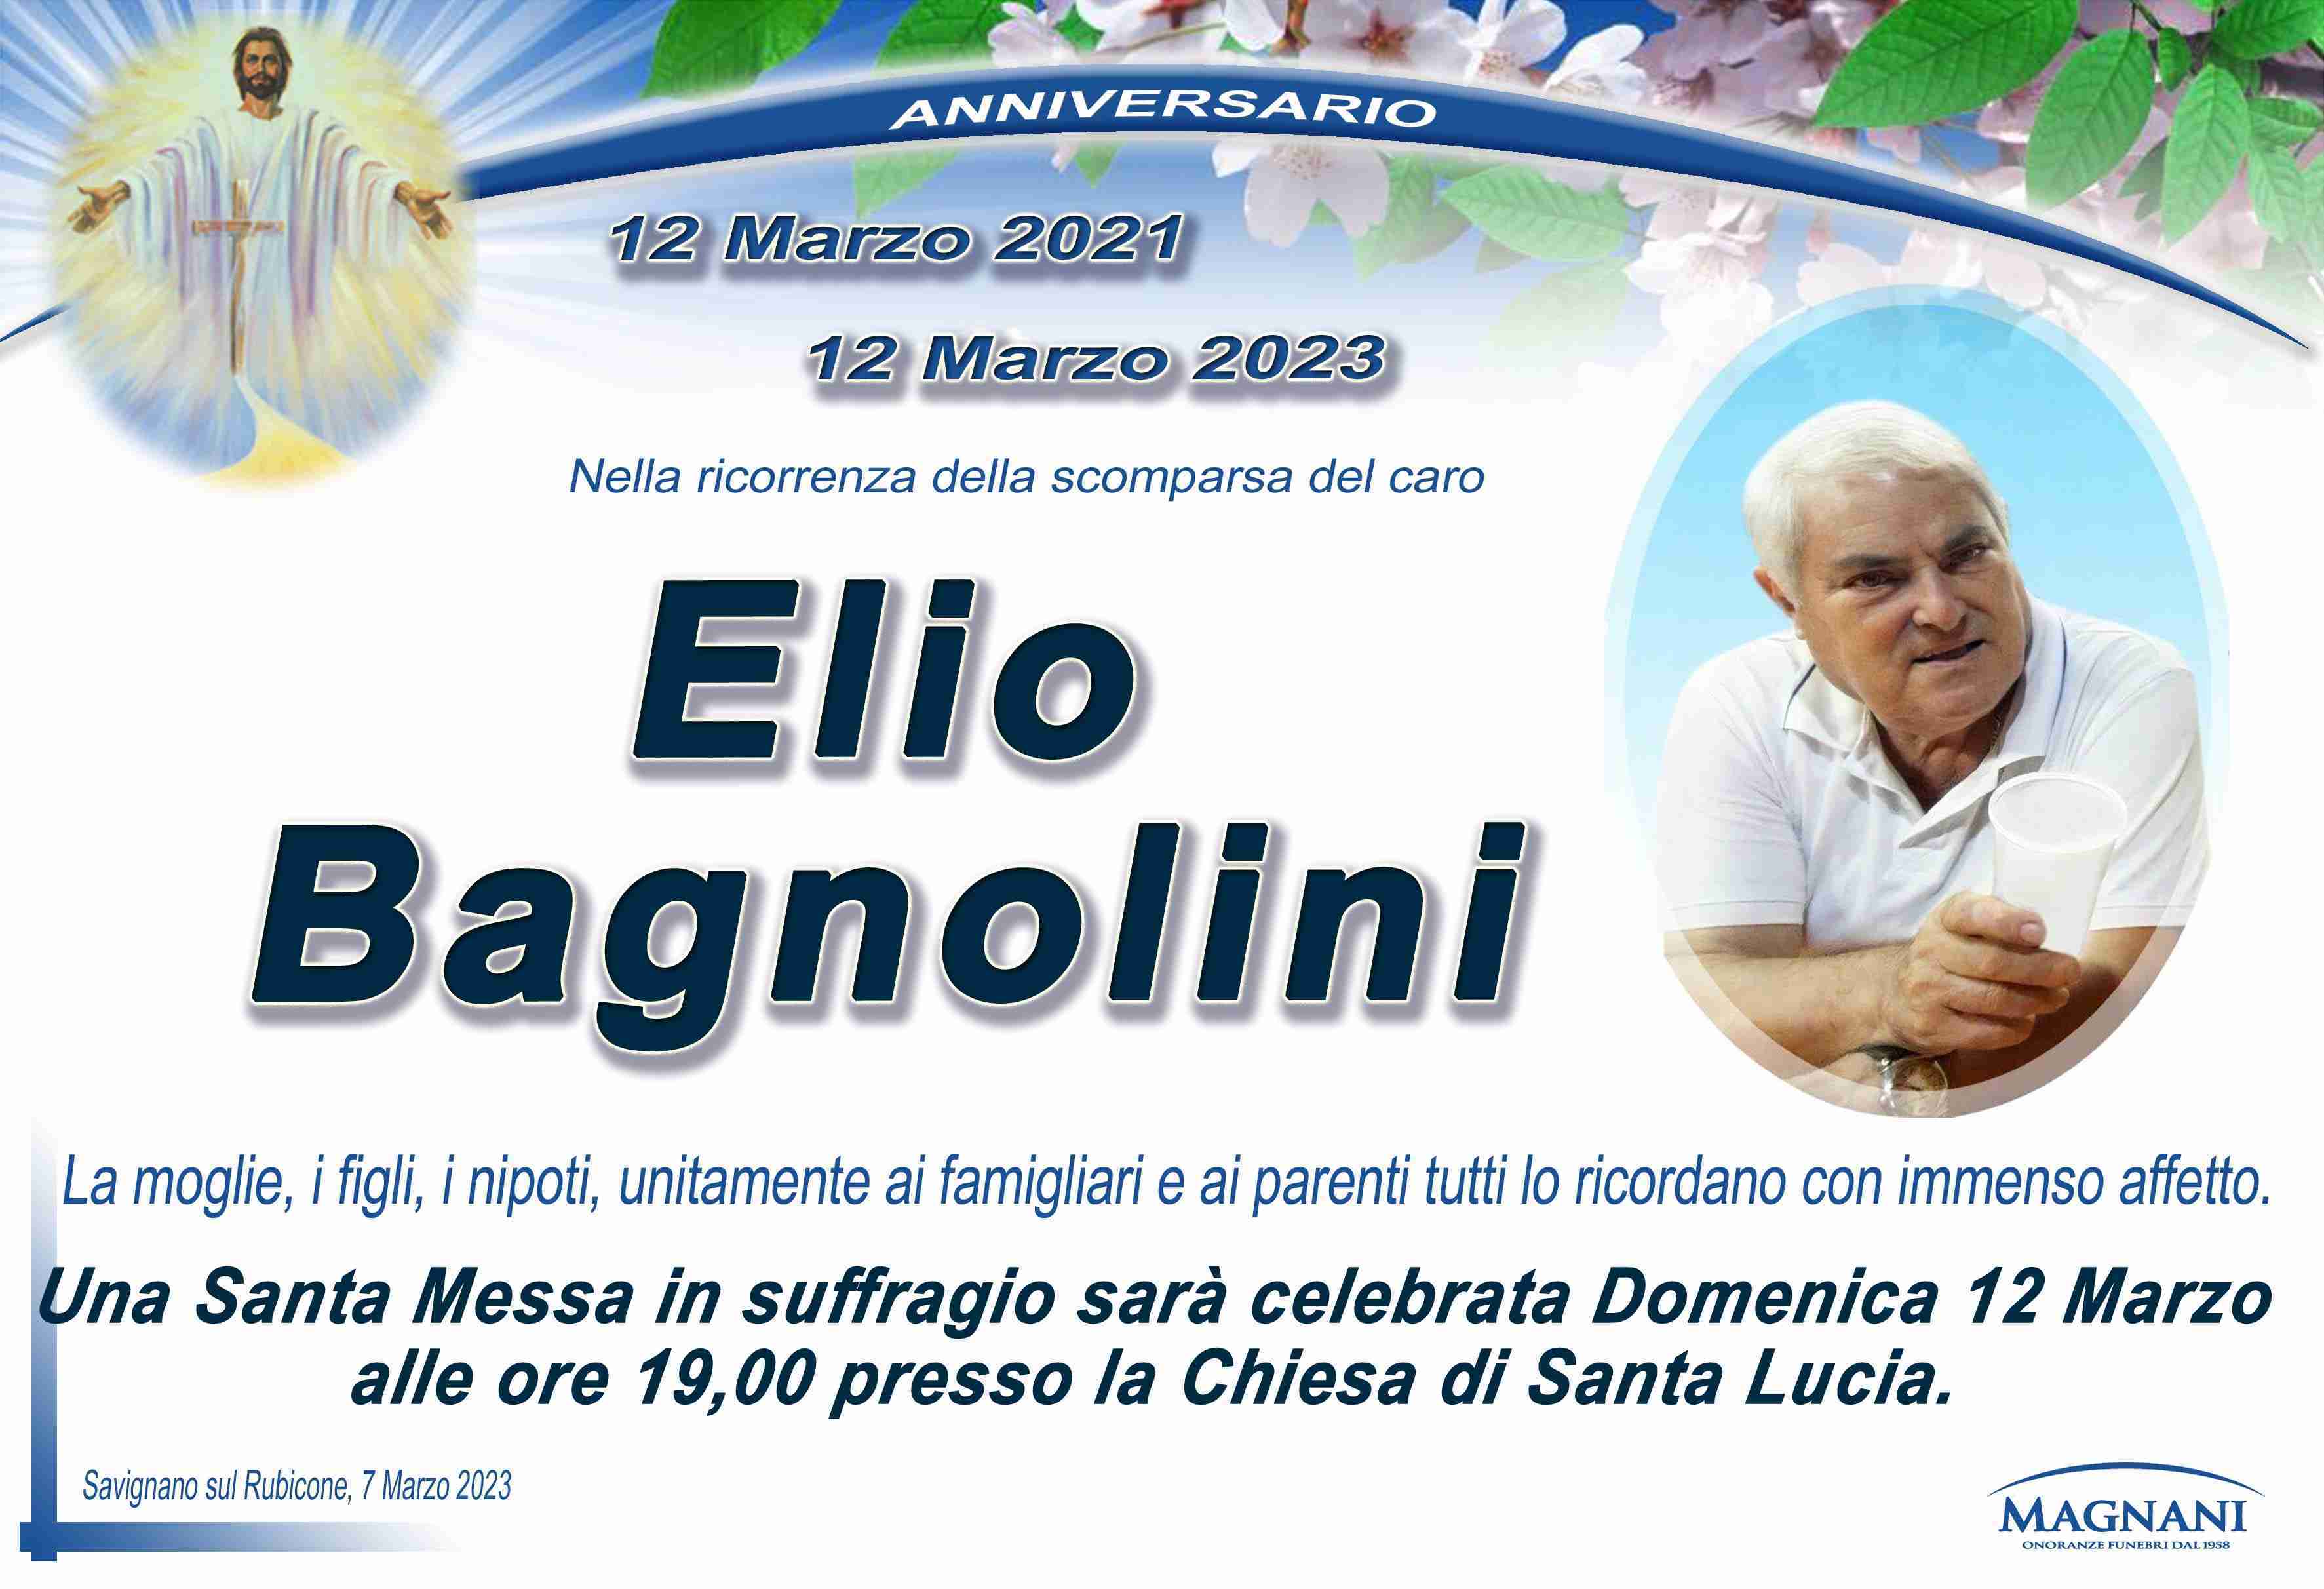 Elio Bagnolini